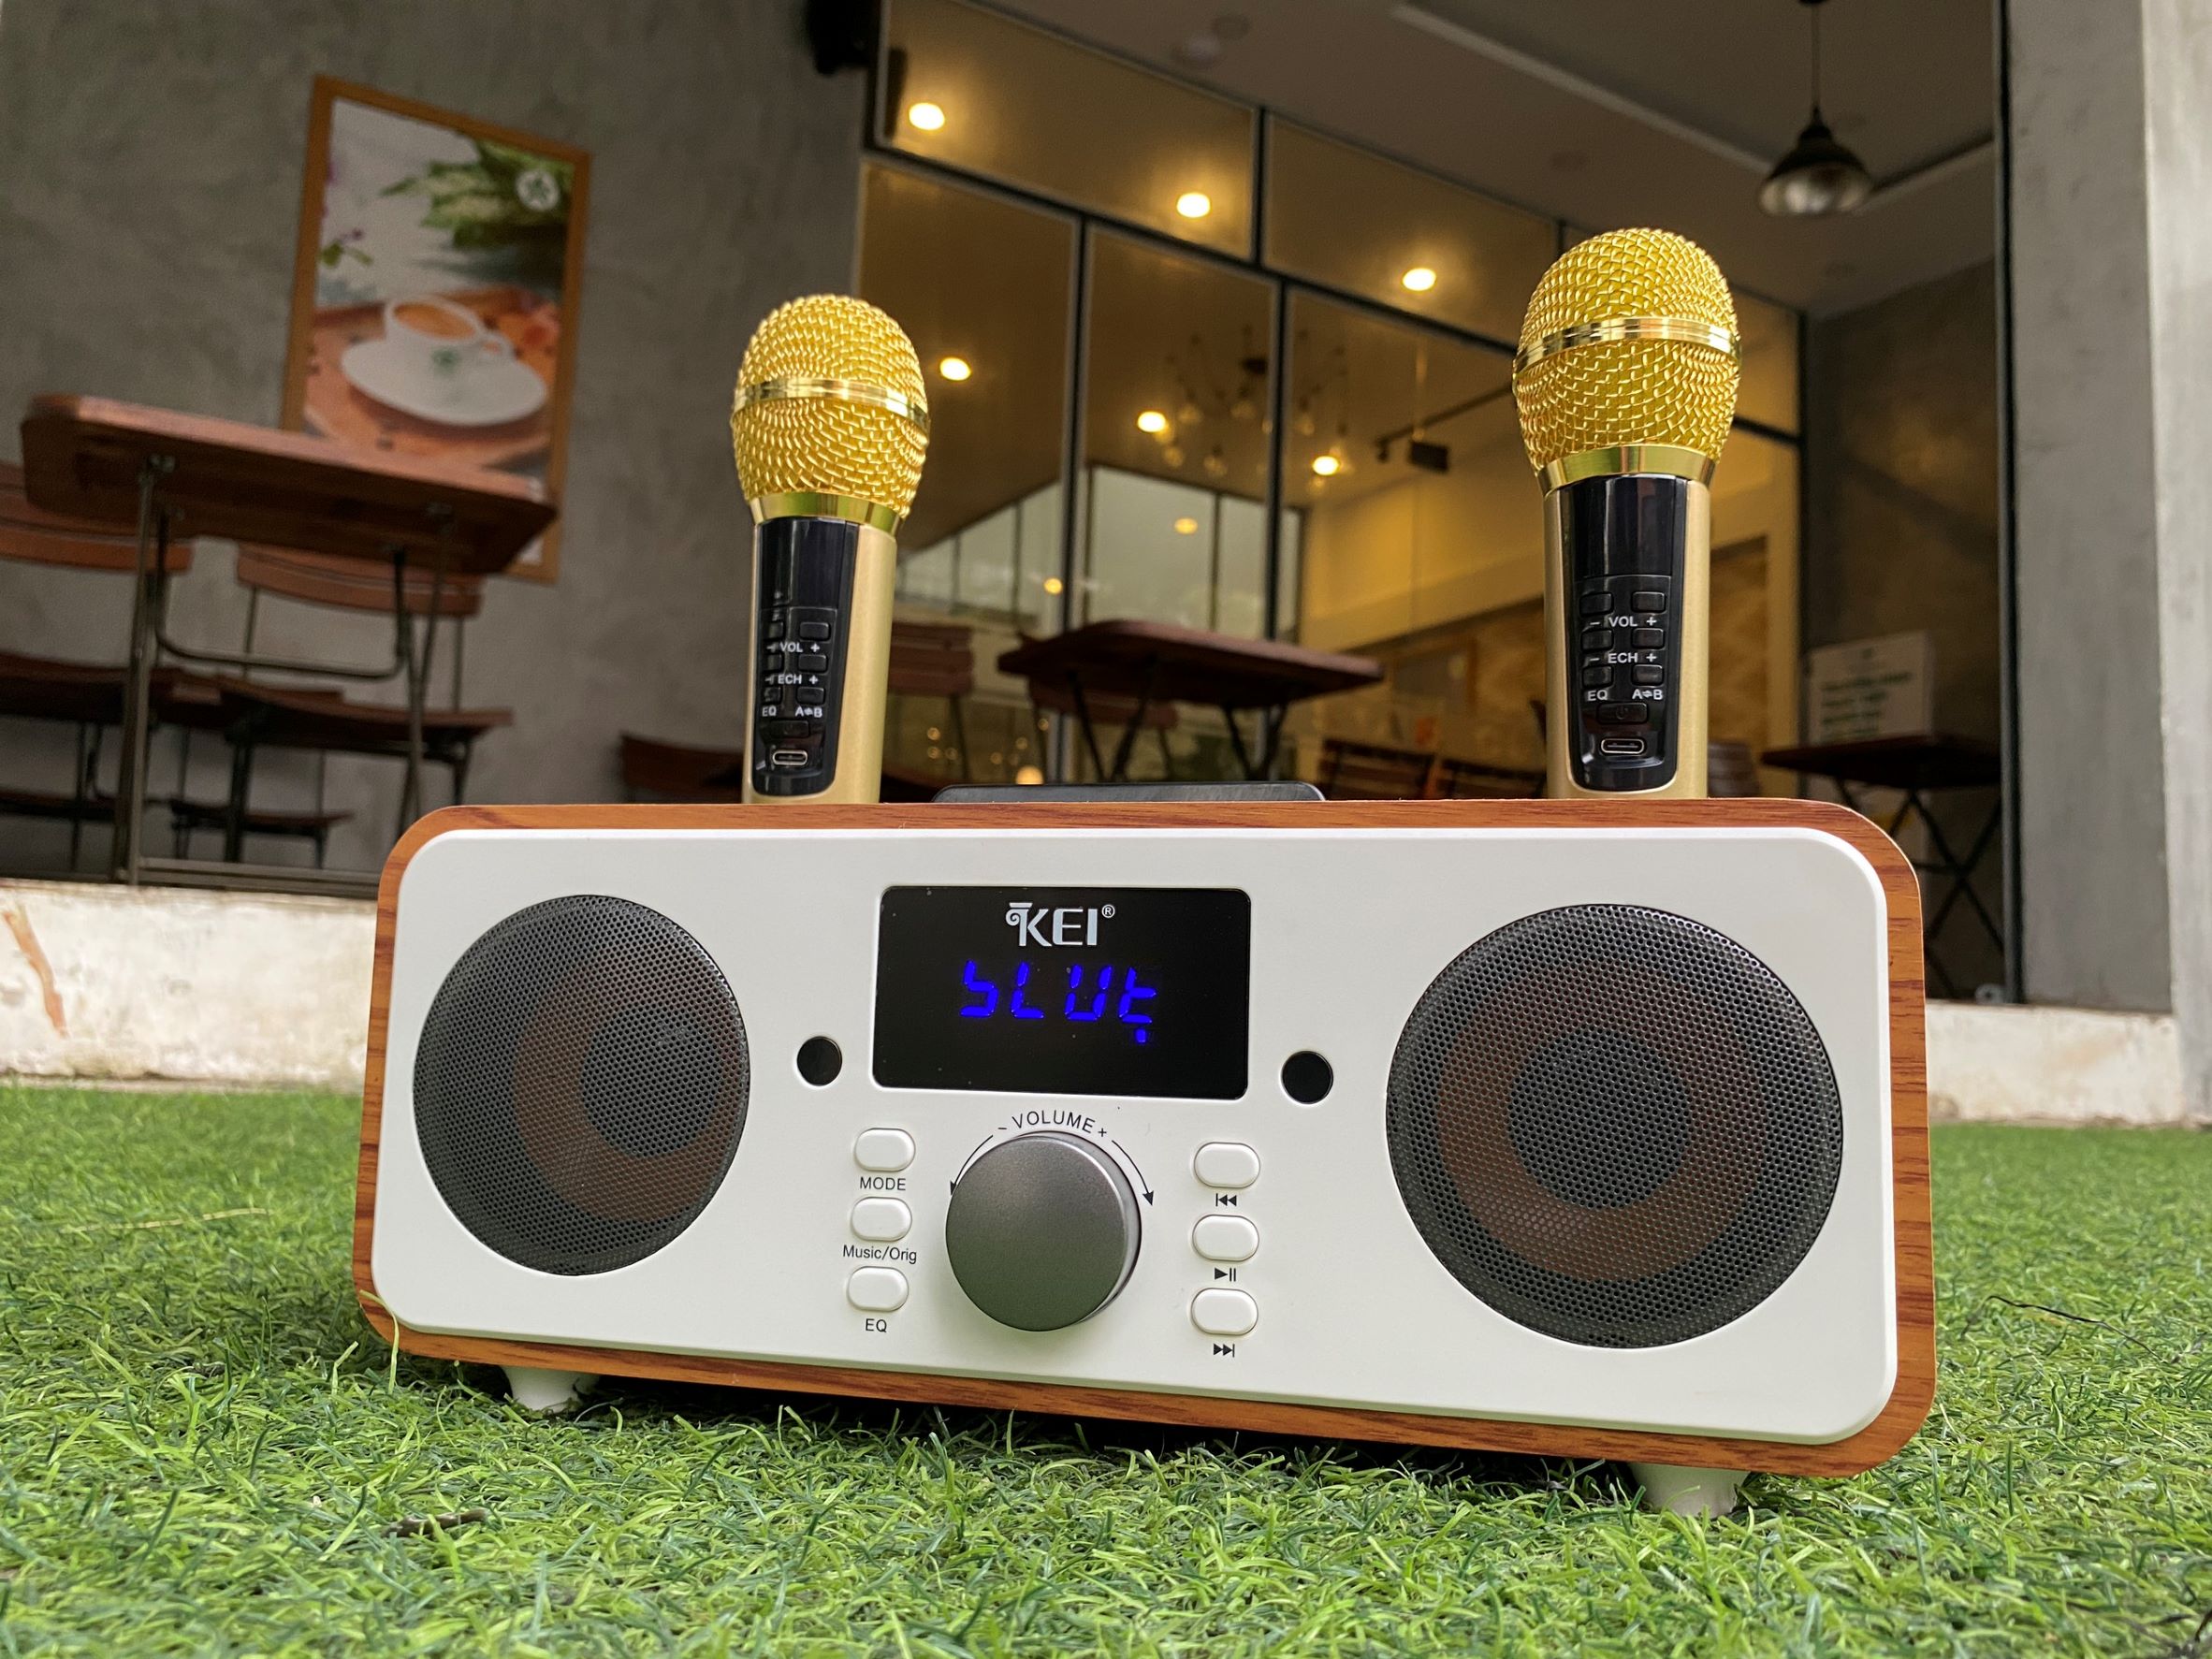 Loa karaoke bluetooth KEI K06 - Tặng kèm 2 micro không dây có màn hình LCD - Sạc pin ngay trên micro - Chỉnh EQ, echo trên micro dễ dàng - Đầy đủ cổng kết nối USB, AUX, TF card - Loa xách tay du lịch cực chất